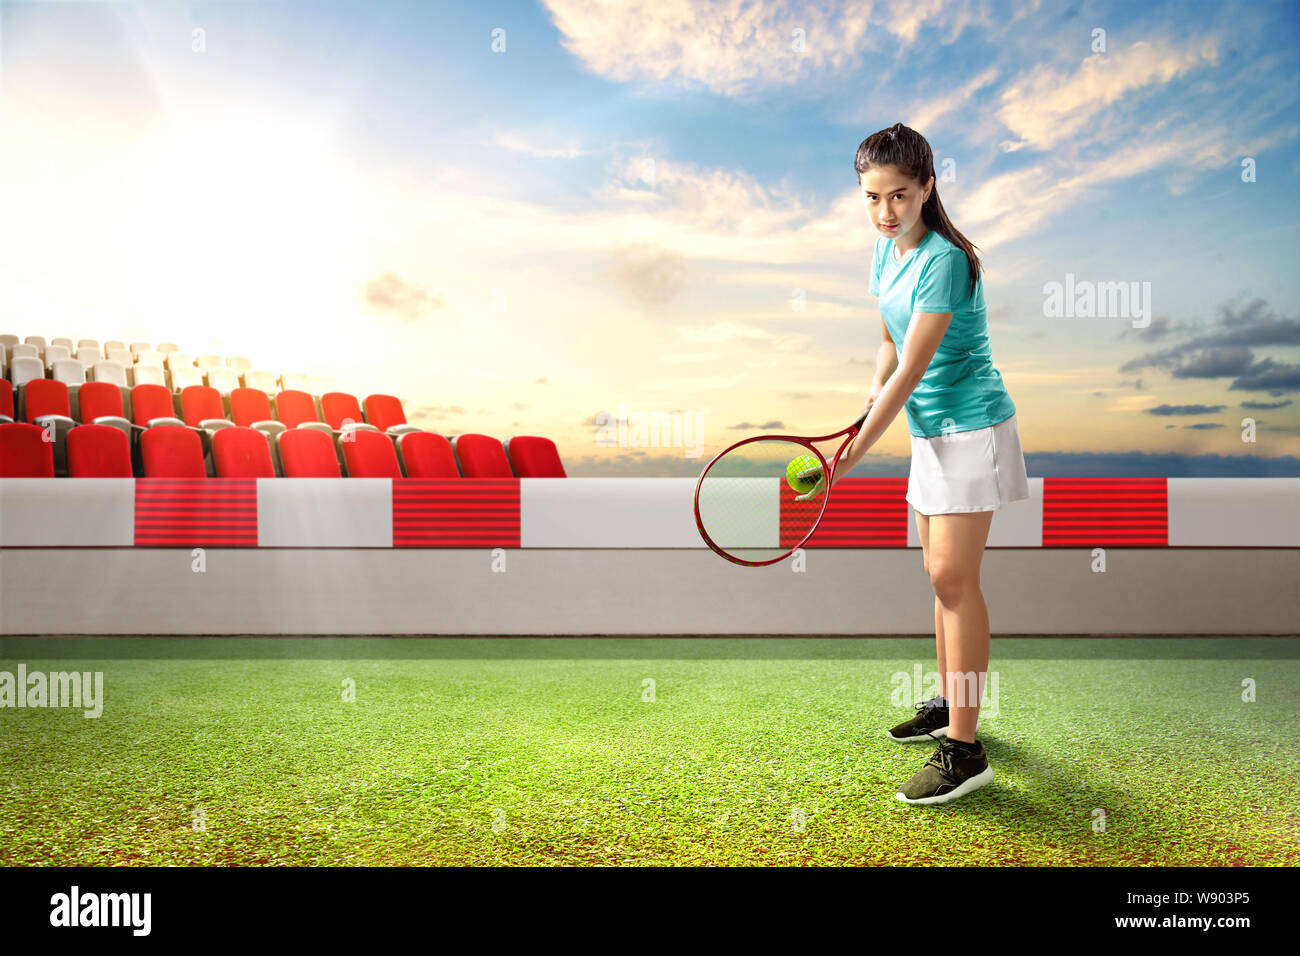 Femme Asiatique avec une raquette de tennis et la balle dans ses mains, prêt à servir sur le court de tennis extérieur Banque D'Images